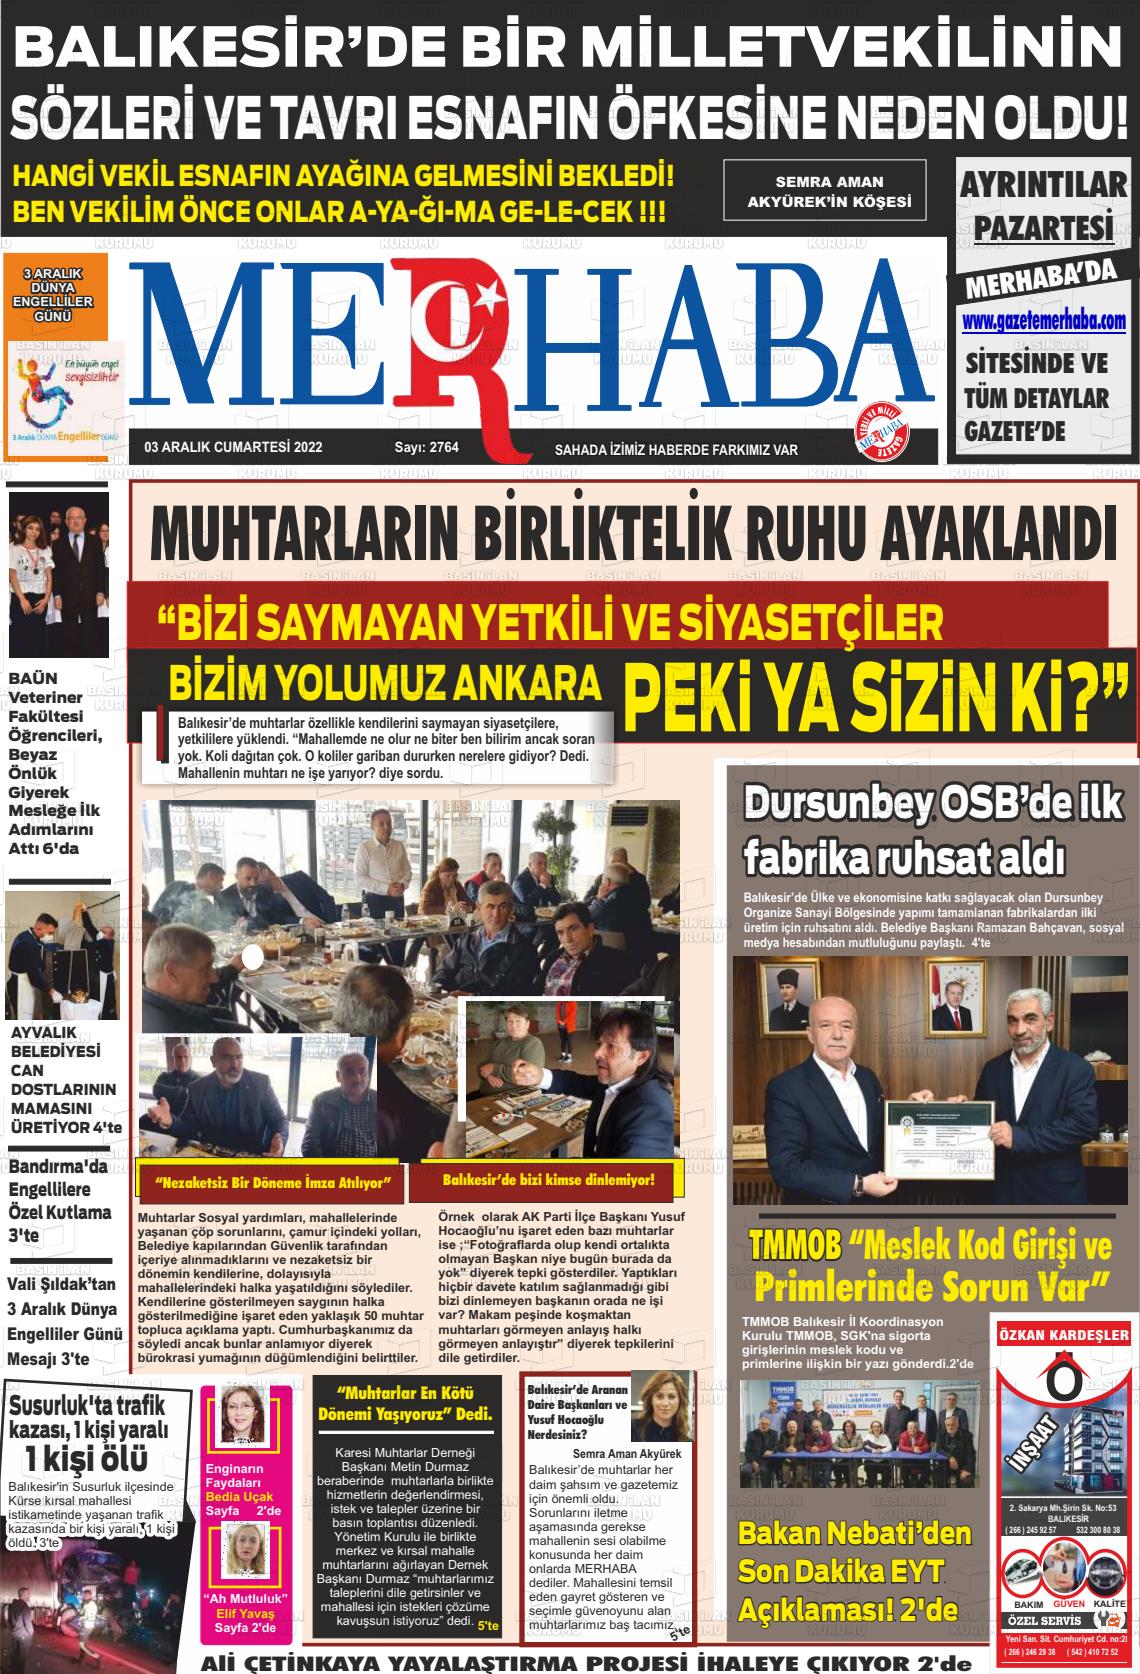 03 Aralık 2022 Büyükşehir Merhaba GAzetesi Gazete Manşeti